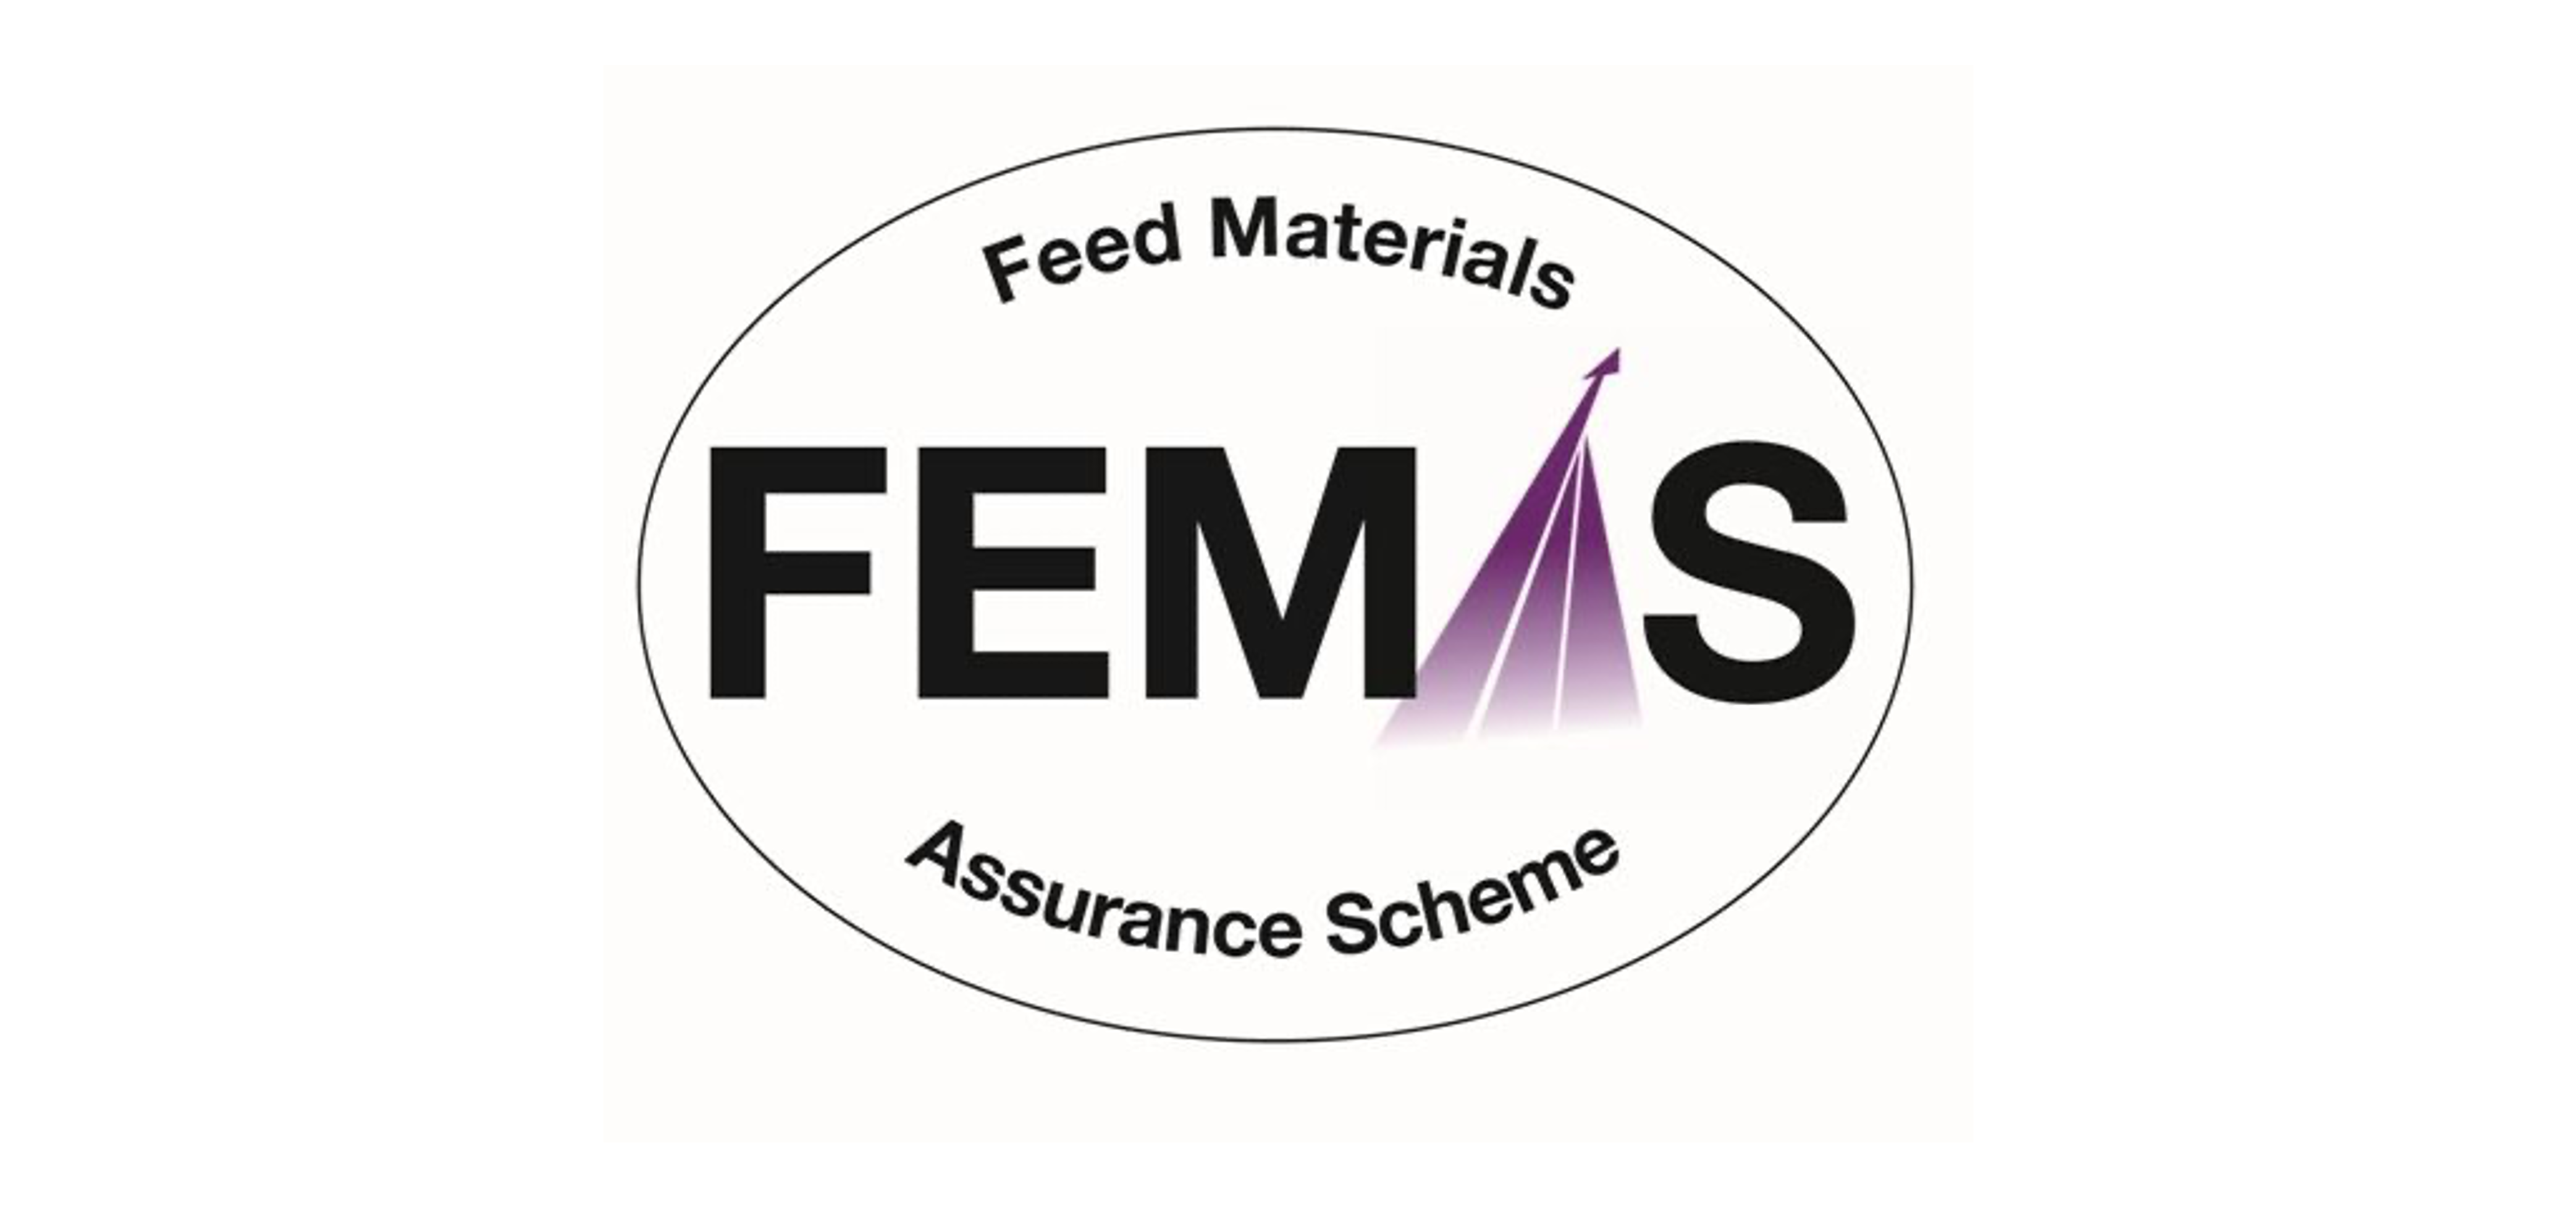 Femas logo